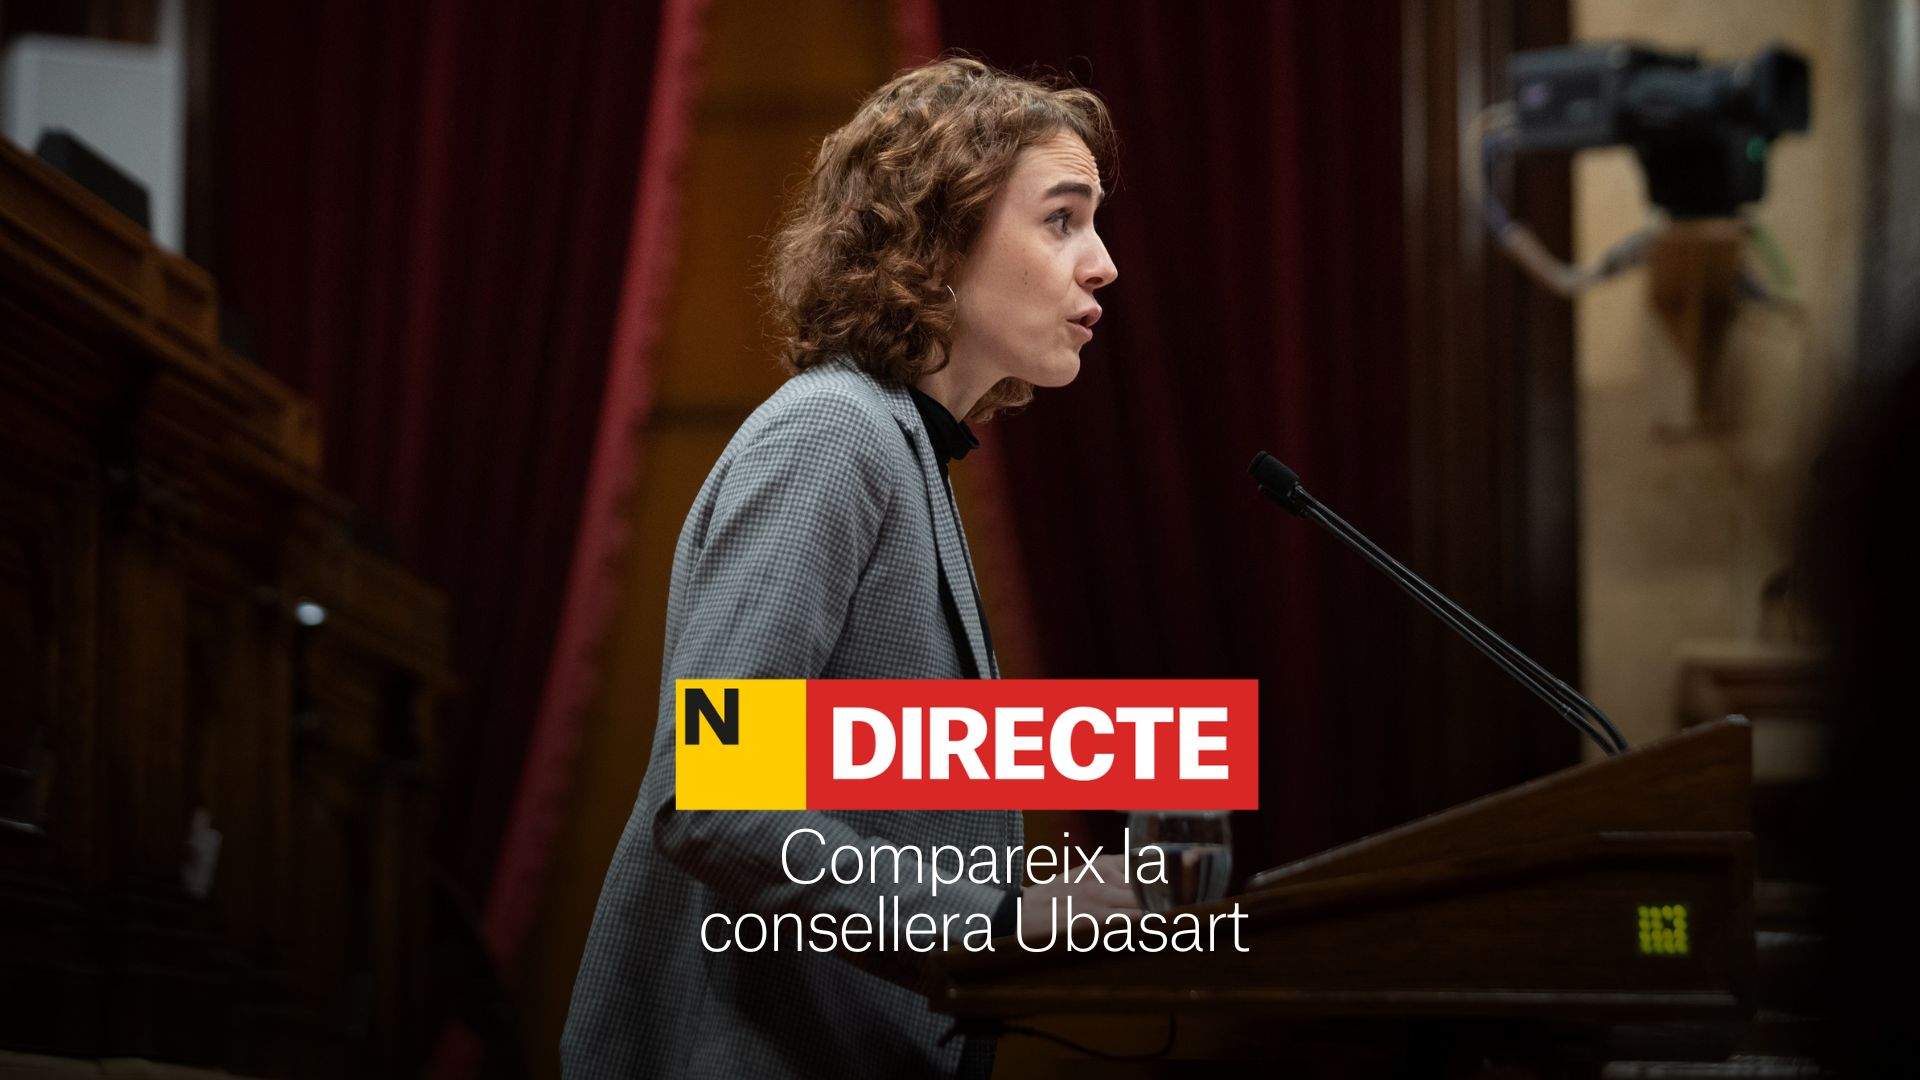 La consellera Ubasart comparece en el Parlament de Catalunya, DIRECTO